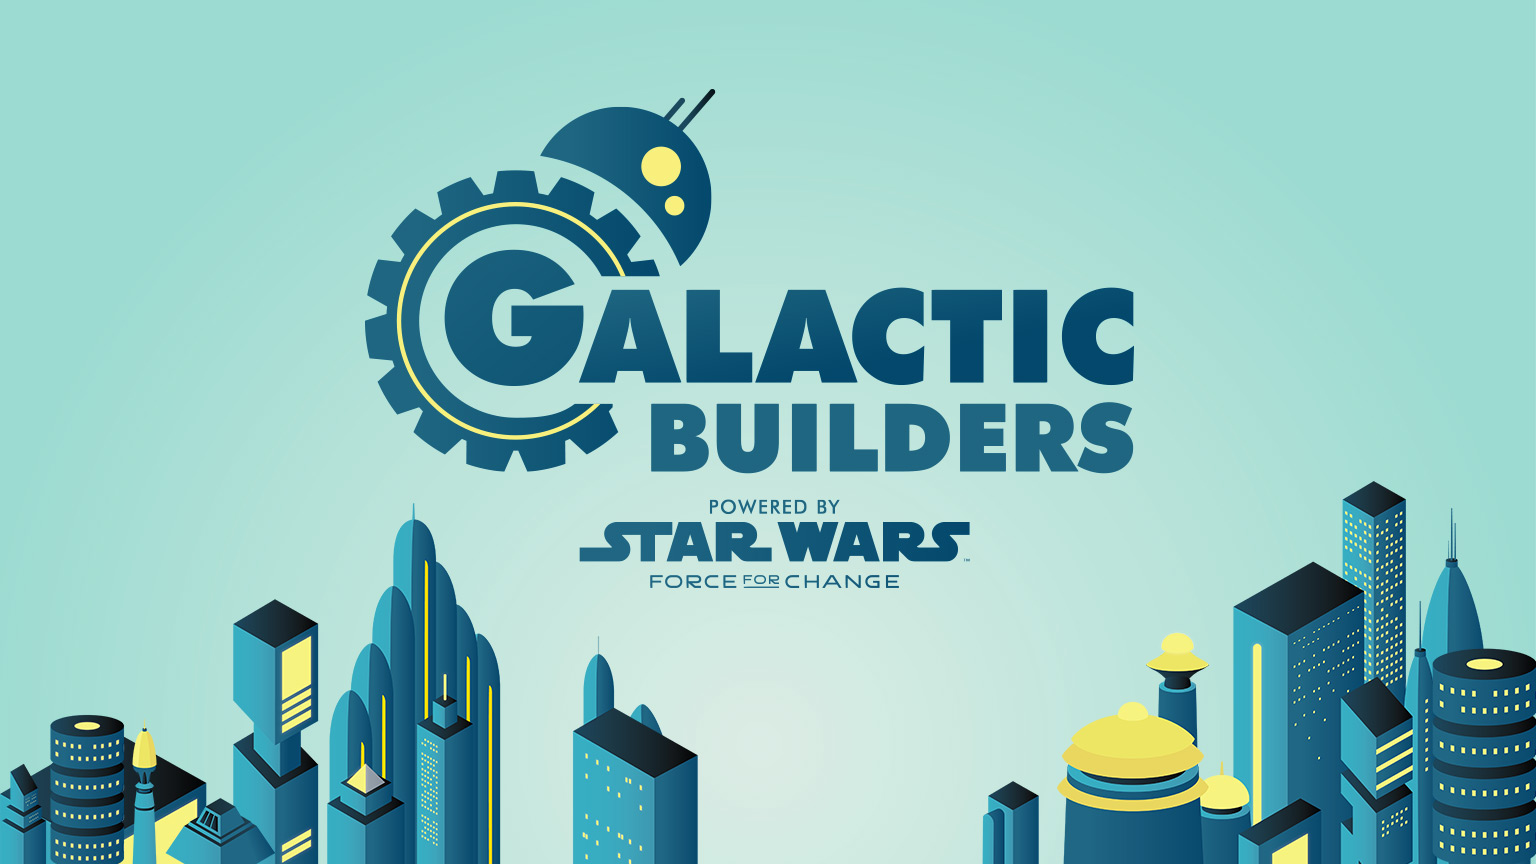 Star Wars Galactic Builders